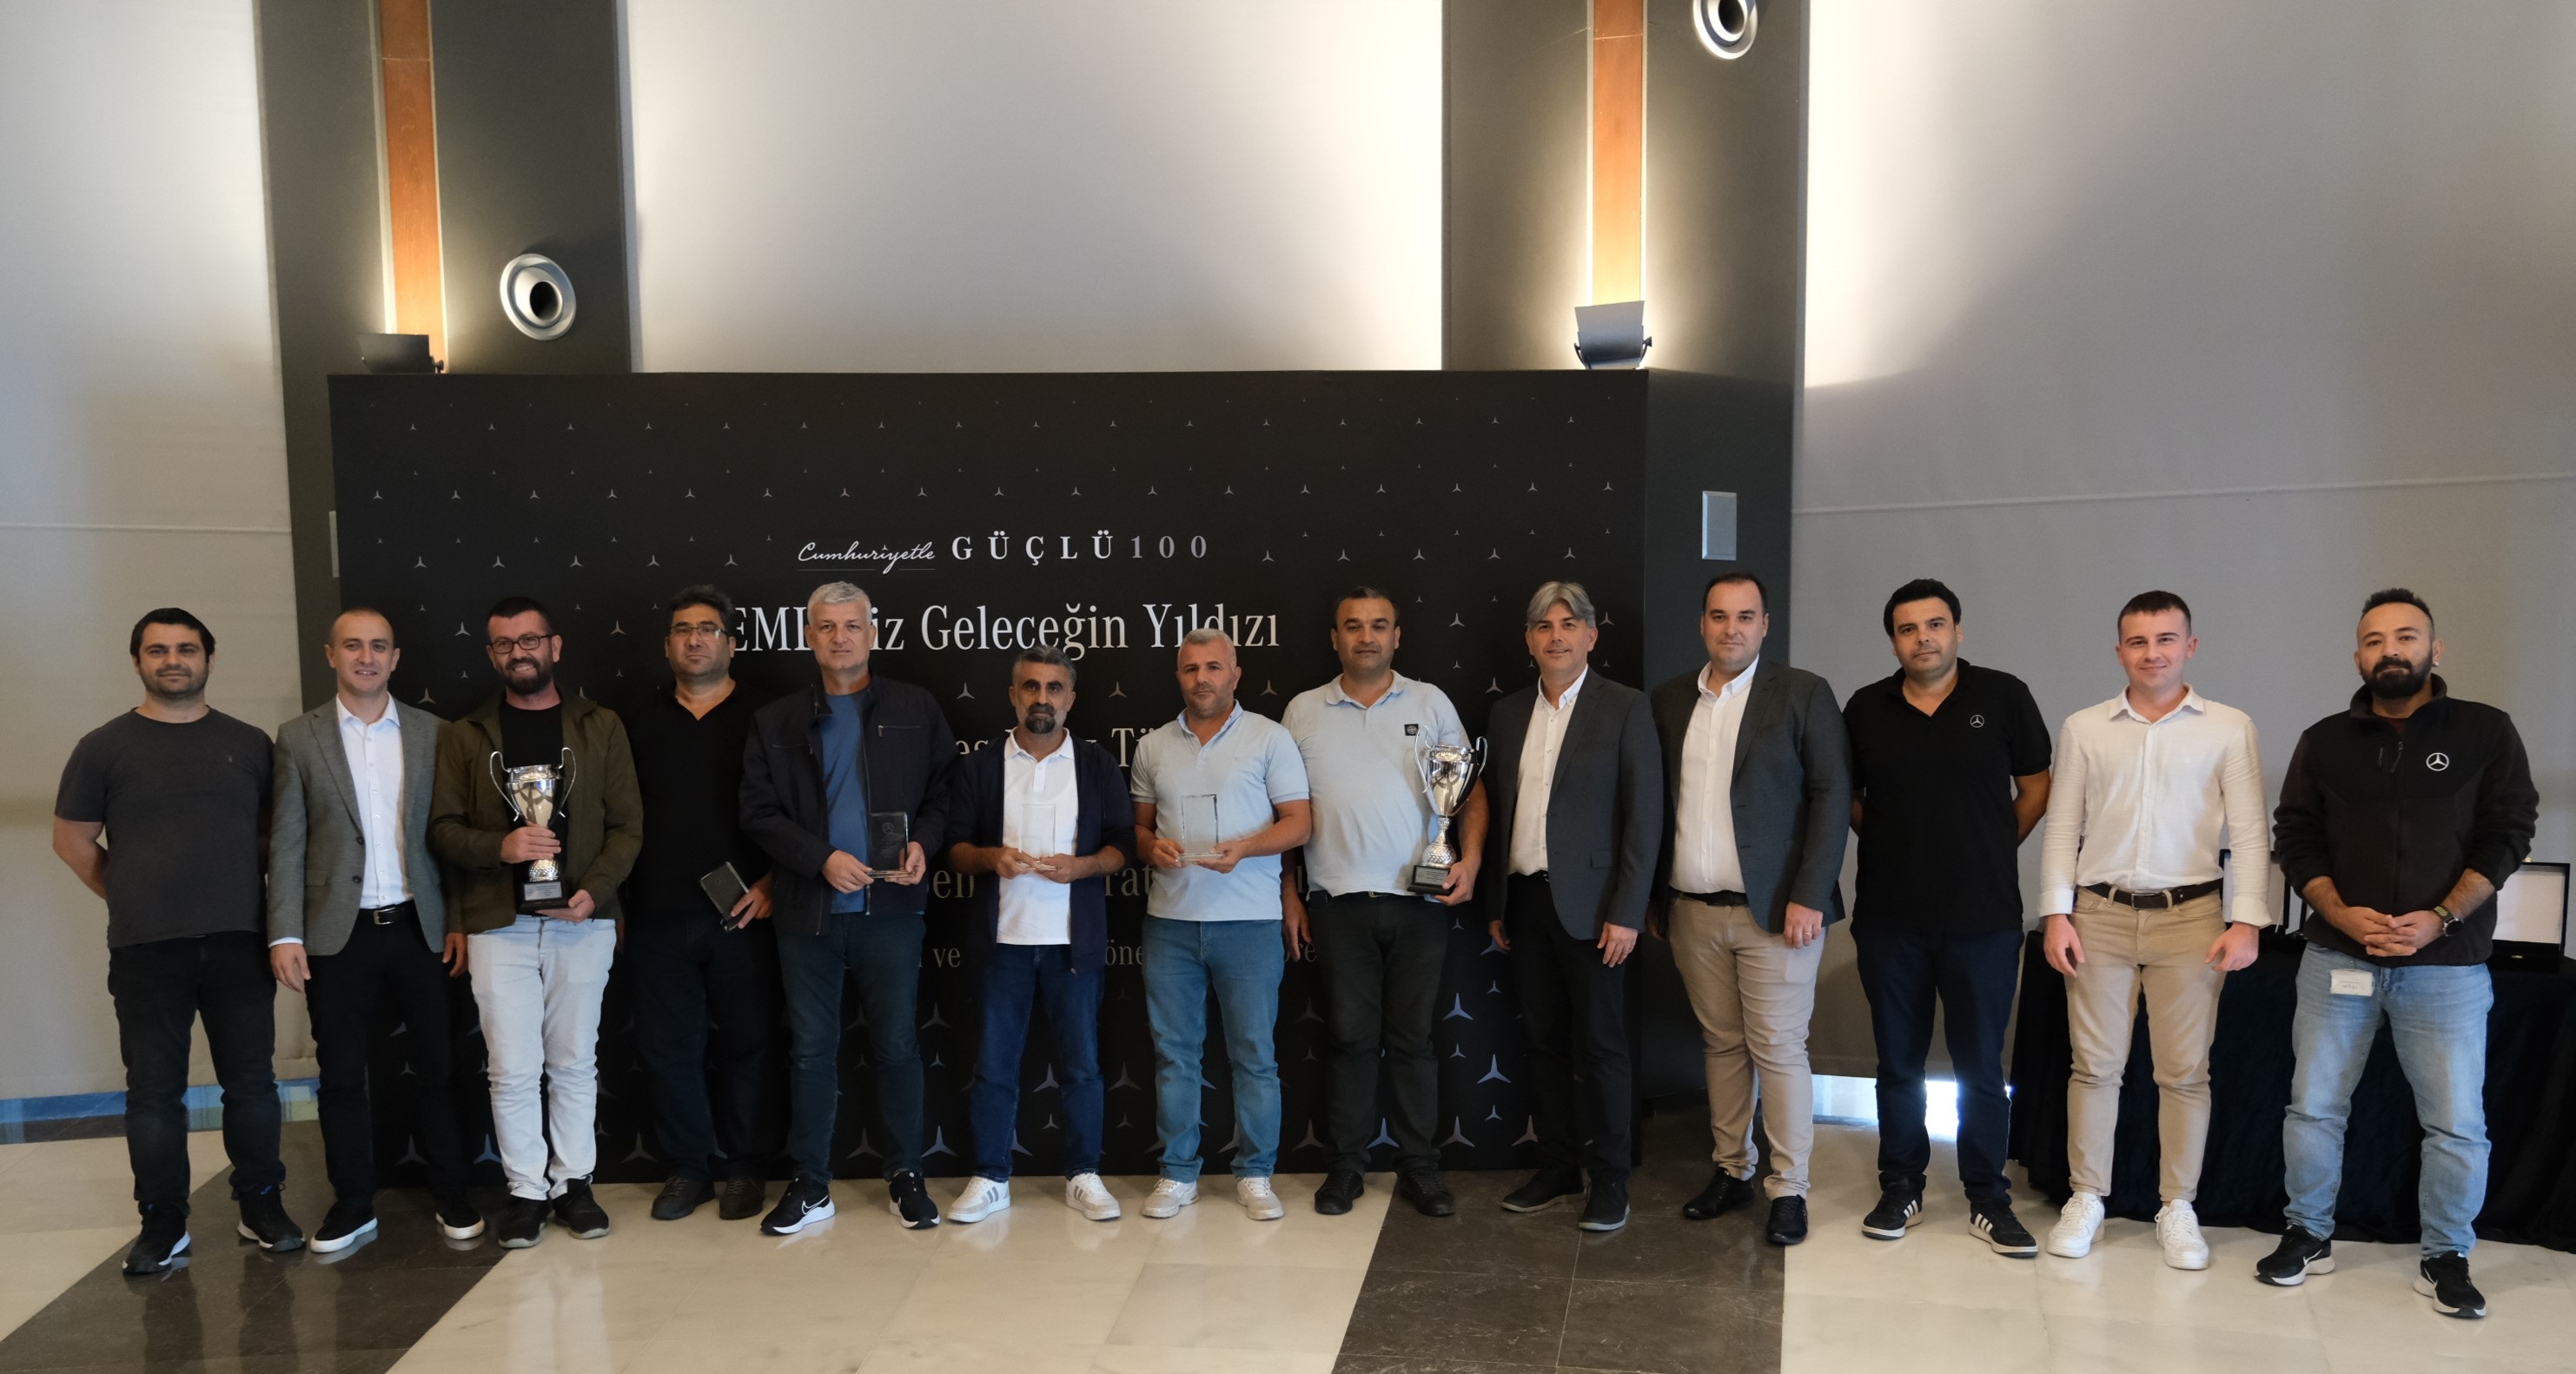 Mercedes-Benz Türk’ten ‘EML’miz Geleceğin Yıldızı’nda  başarılı olan laboratuvarlara ödül